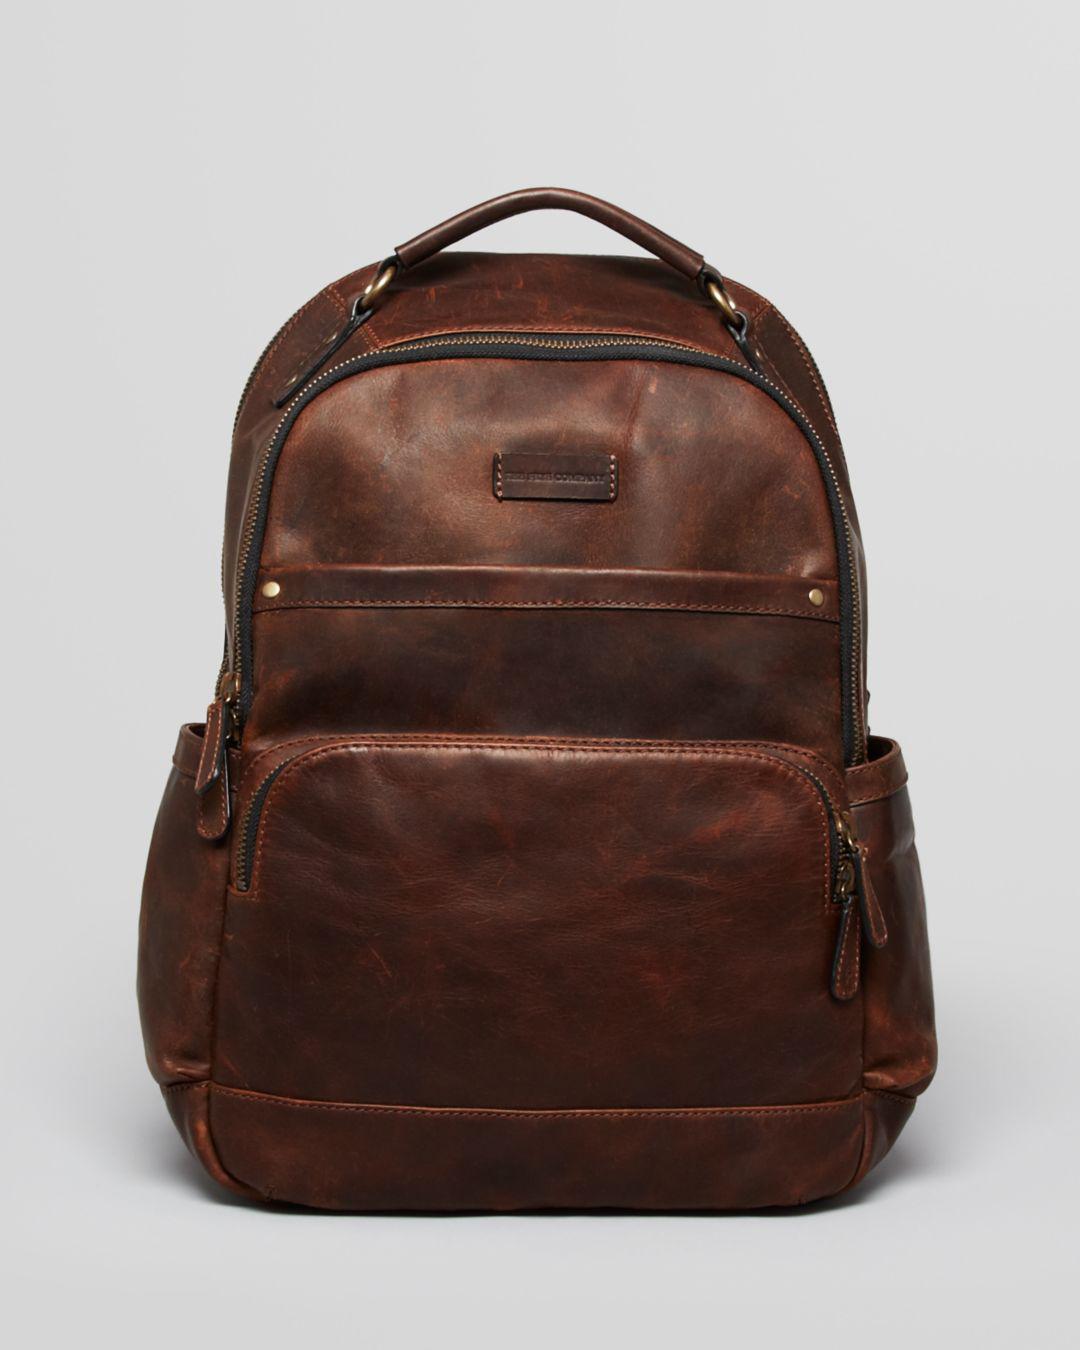 Frye Logan Leather Backpack in Dark Brown (Brown) for Men - Lyst